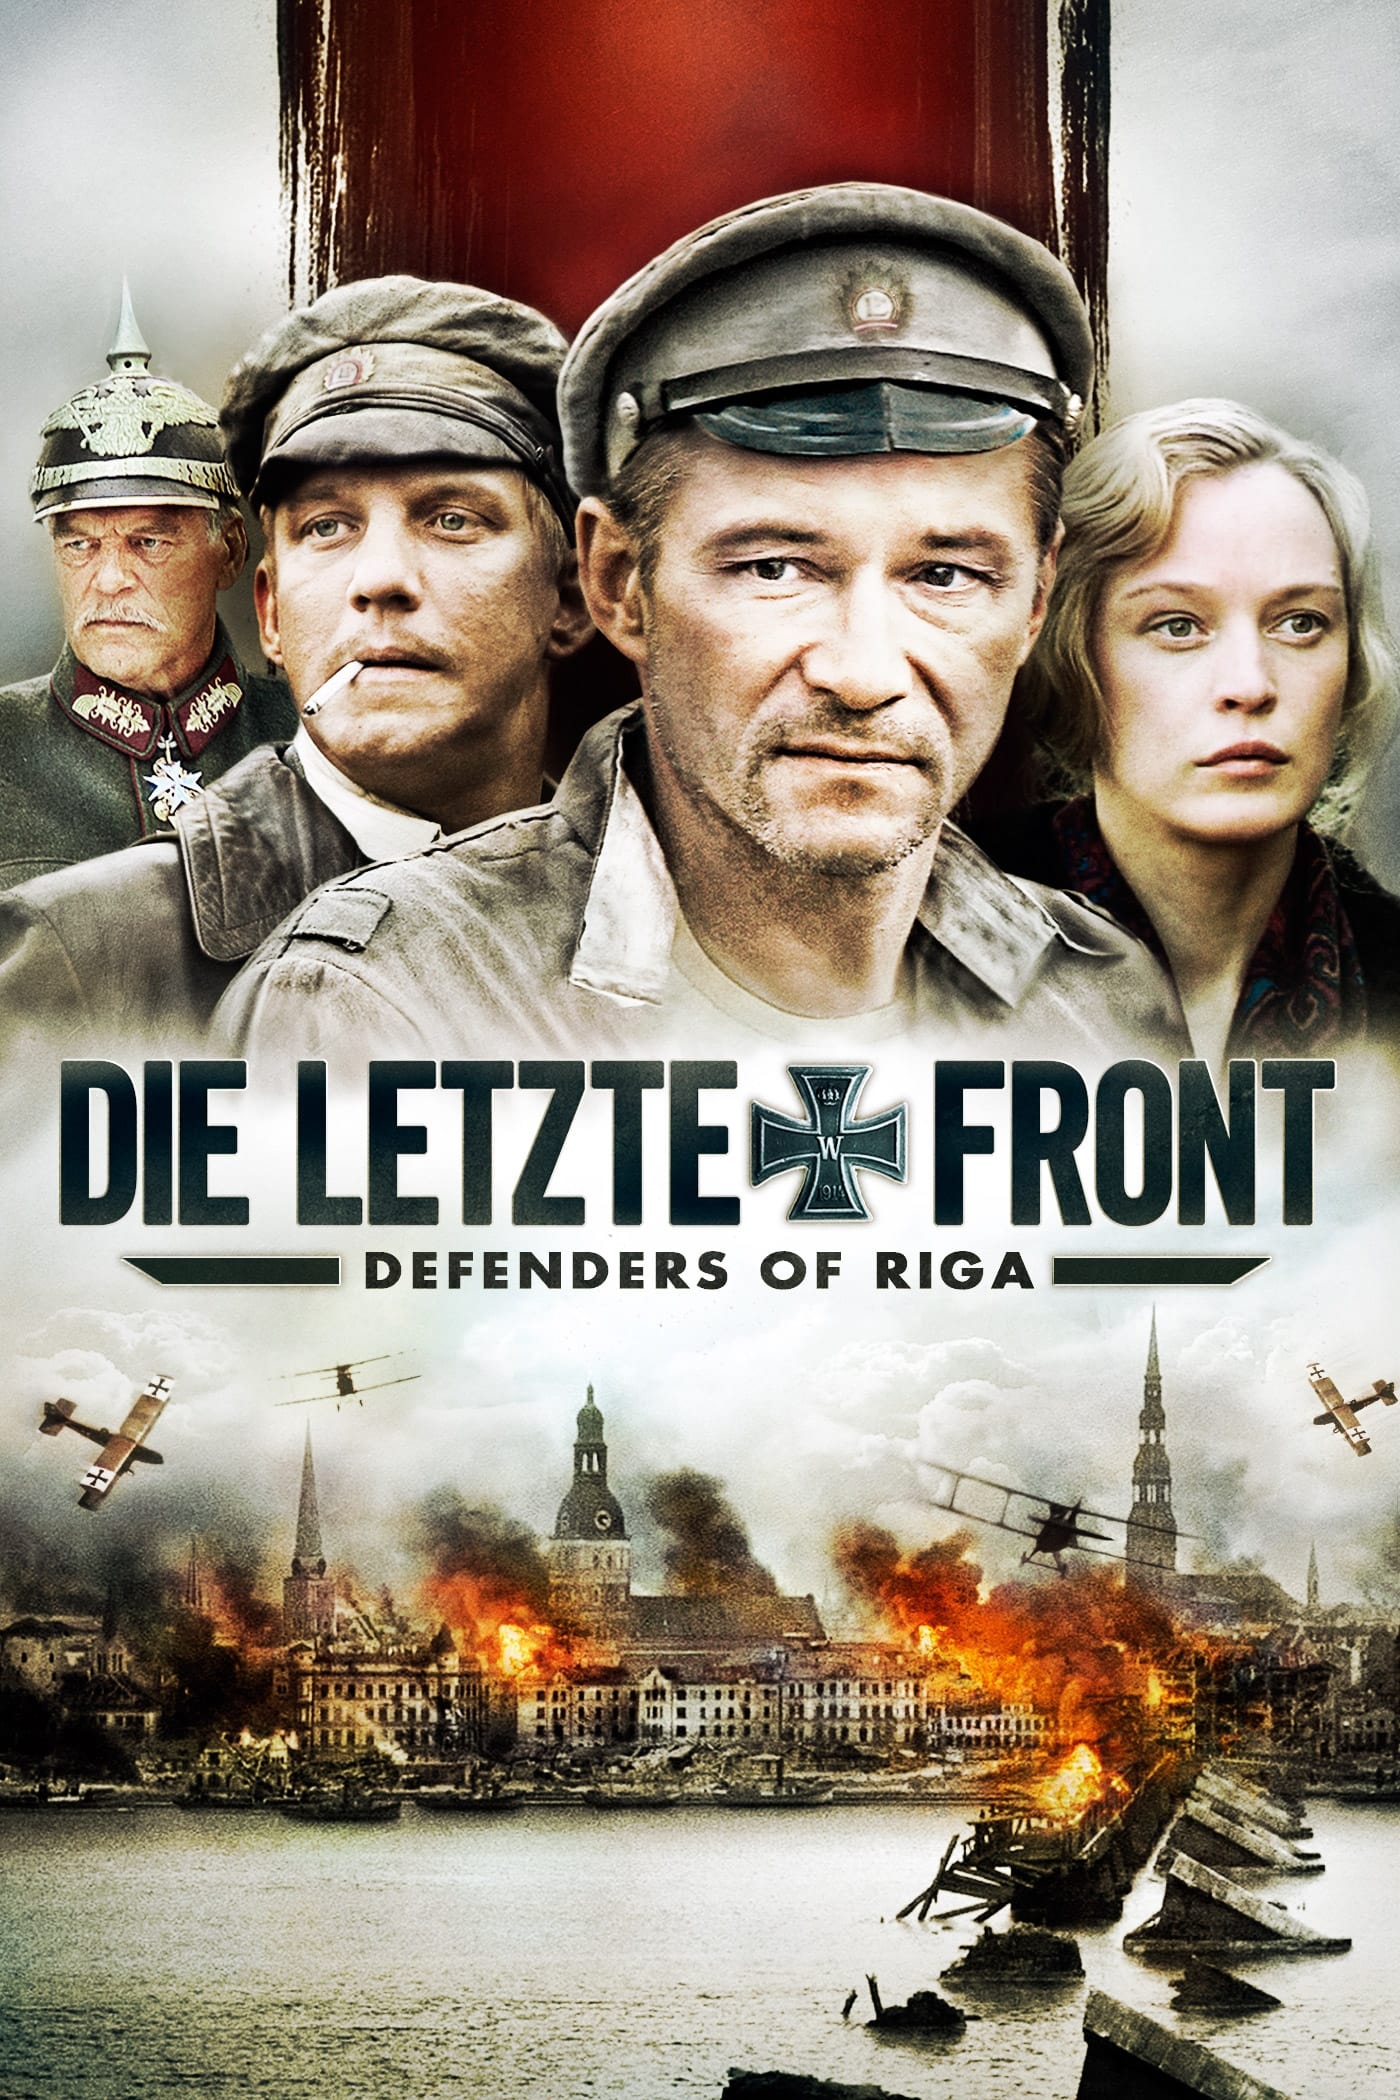 دانلود صوت دوبله فیلم Defenders of Riga 2007